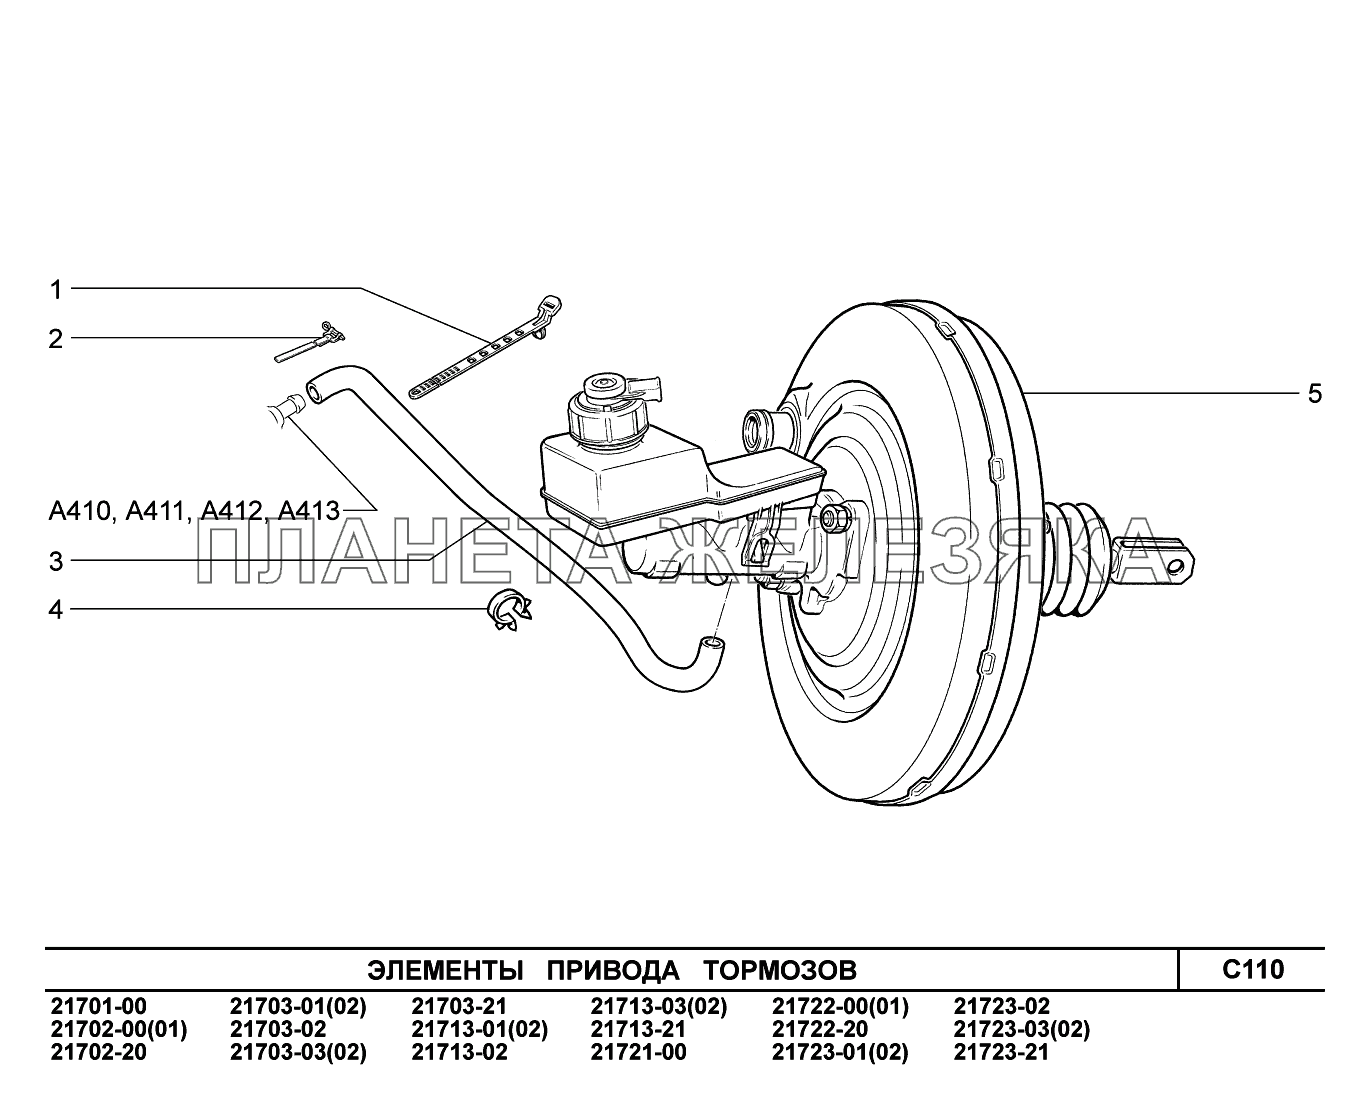 C110. Элементы привода тормозов ВАЗ-2170 